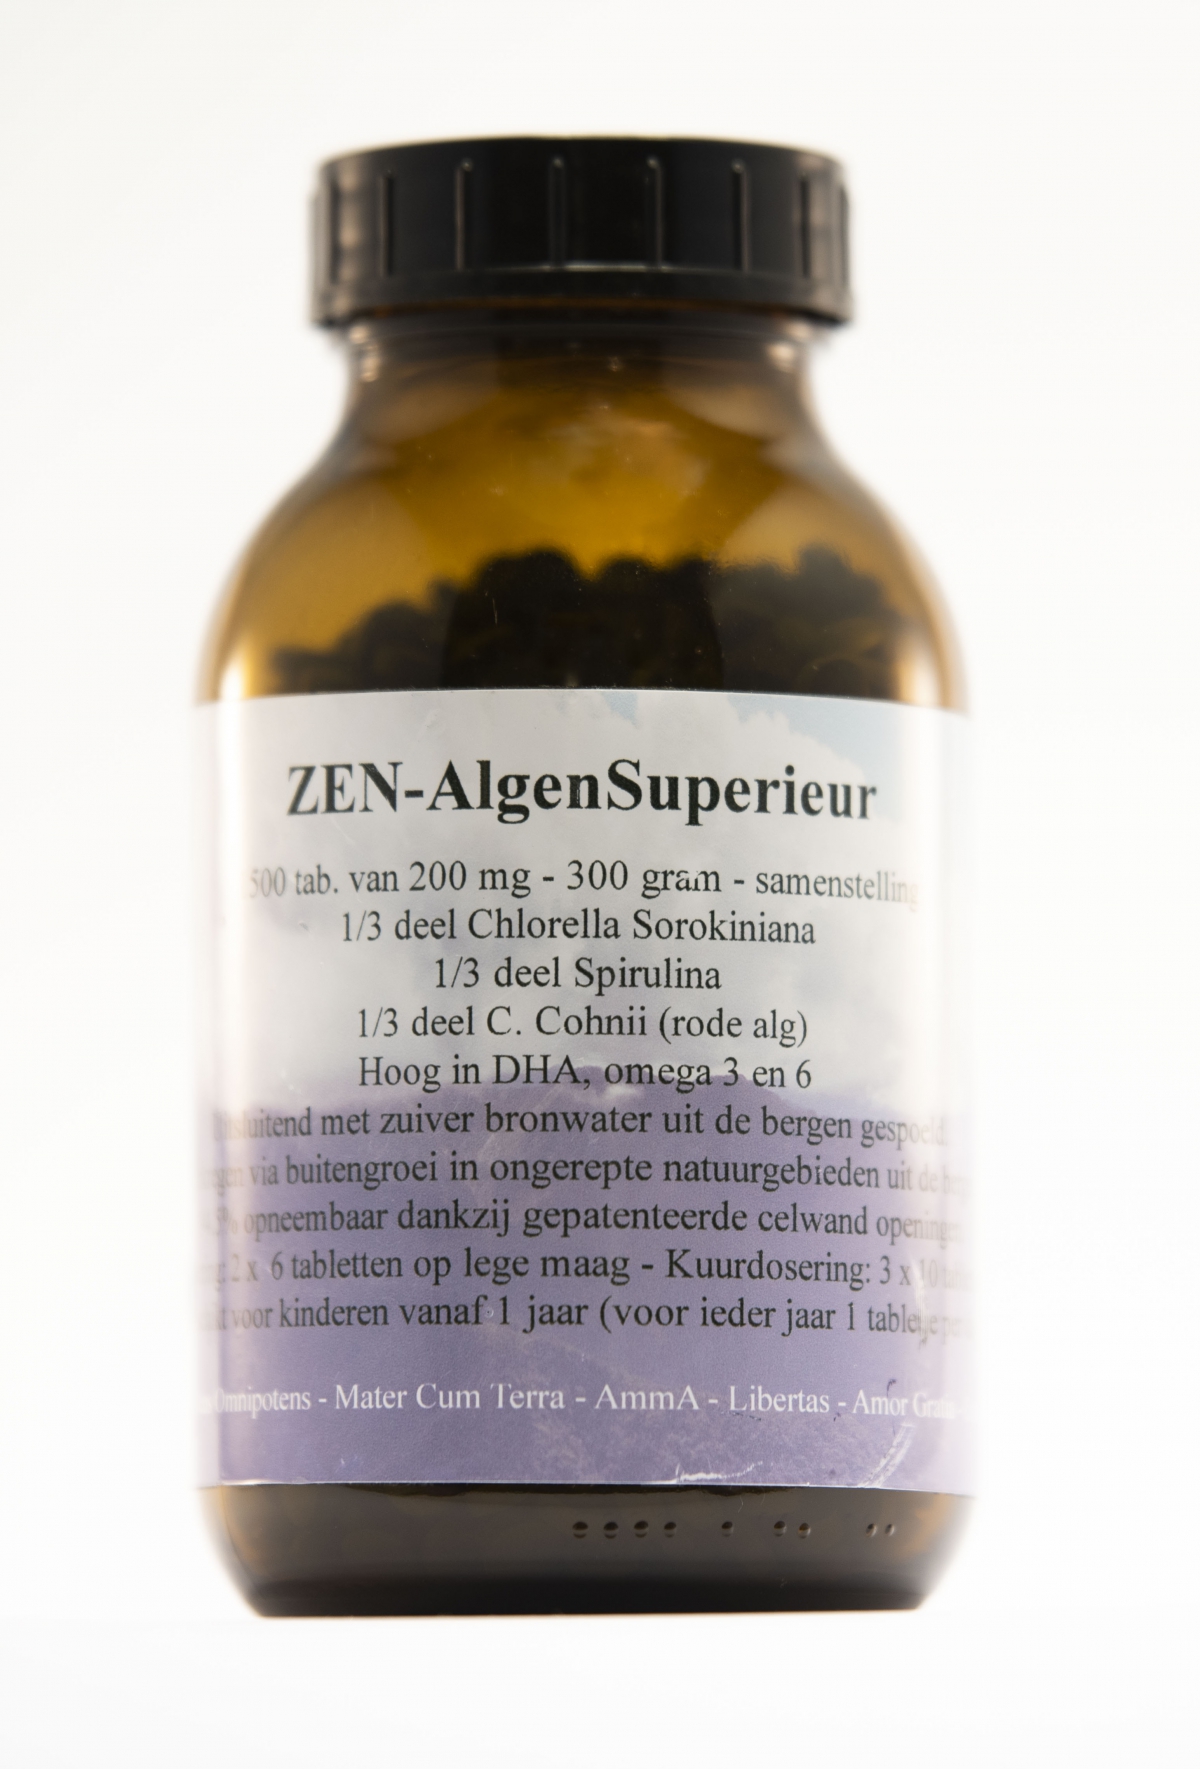 AlgenSuperieur - Zen - 1500 tabs van 200 mg